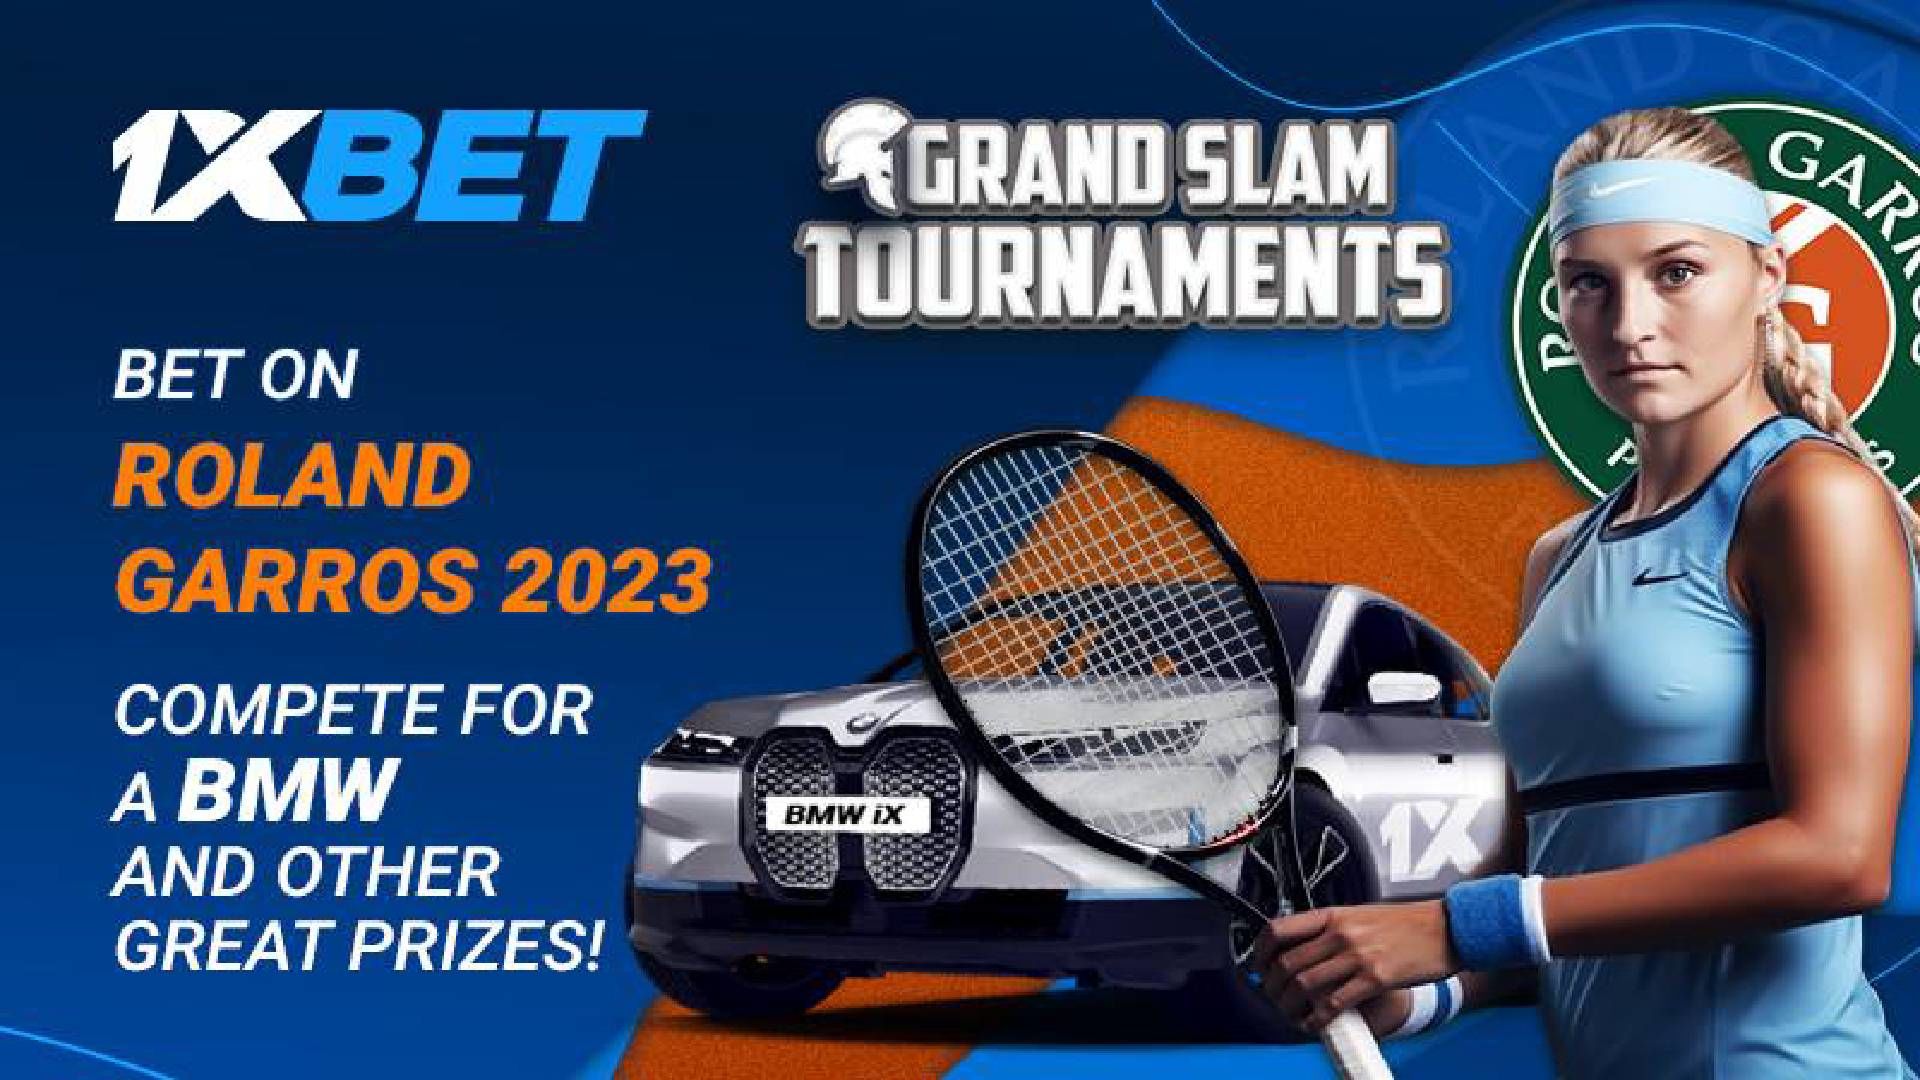 1xBet Roland Garros Promotion